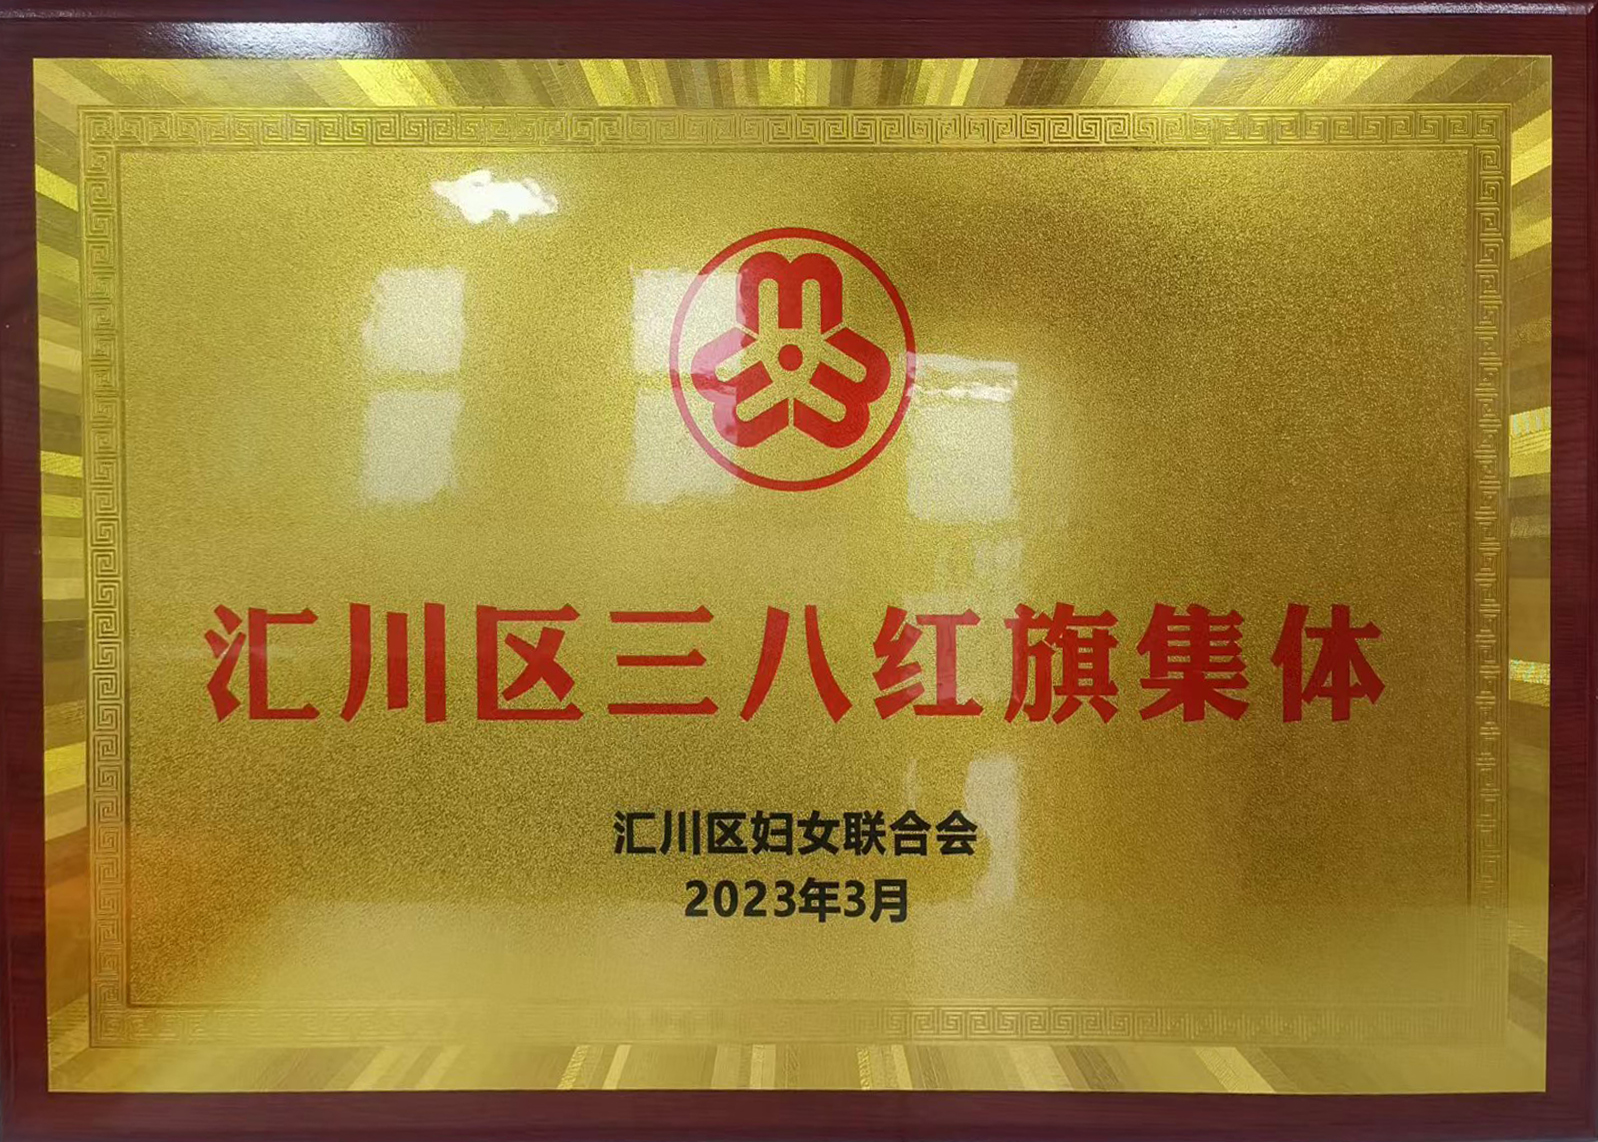 汇川巾帼风采展丨贵州中航电梯有限责任公司！